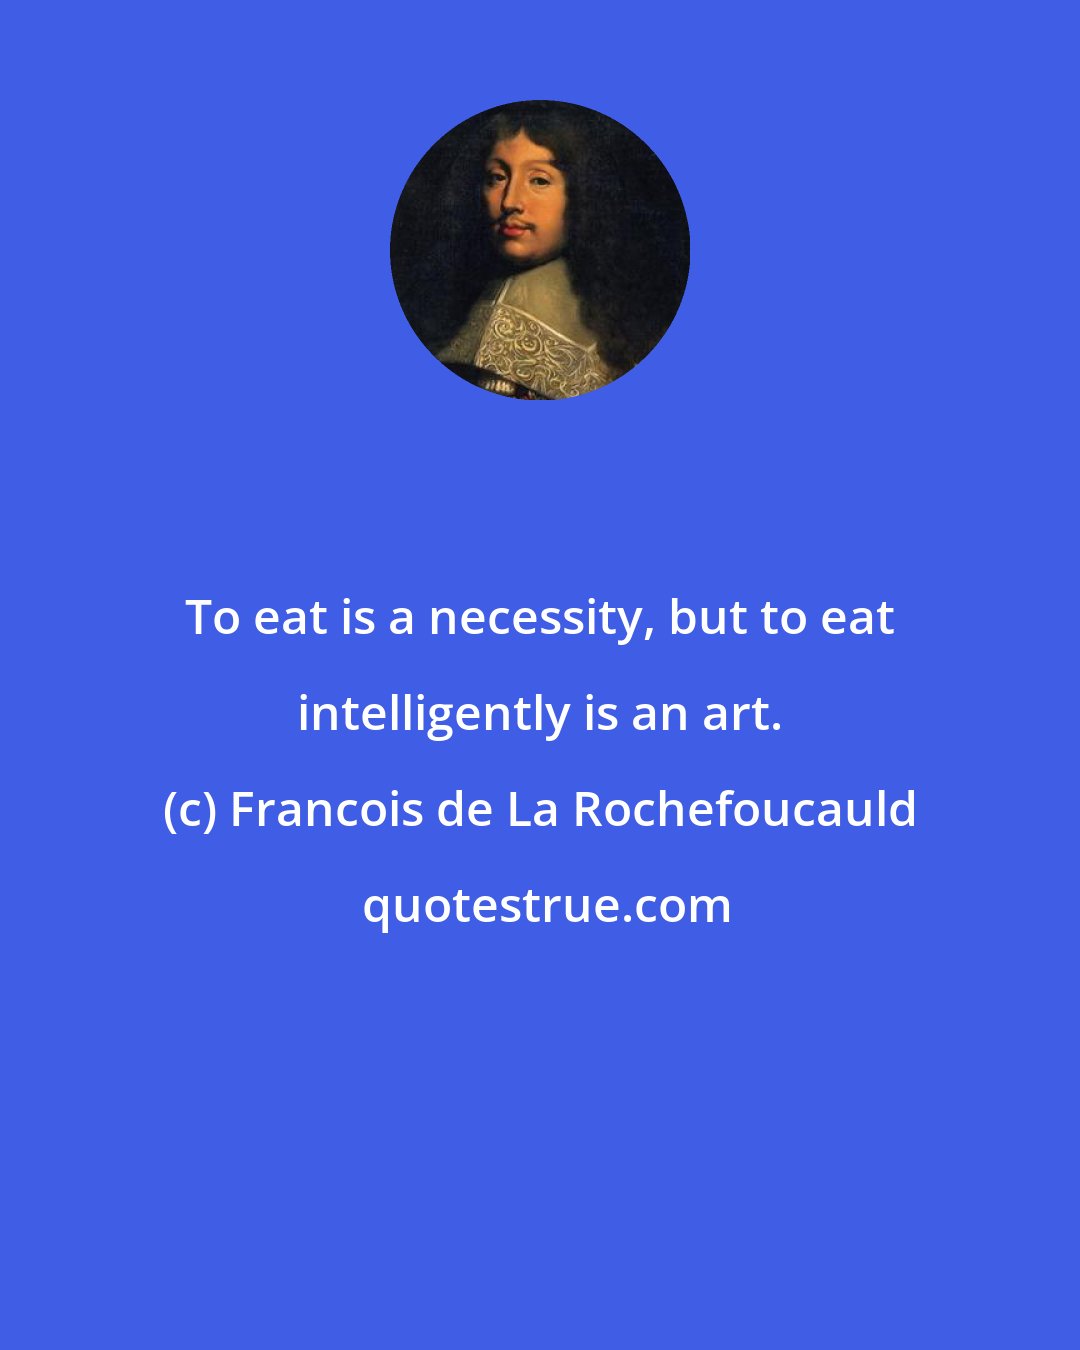 Francois de La Rochefoucauld: To eat is a necessity, but to eat intelligently is an art.